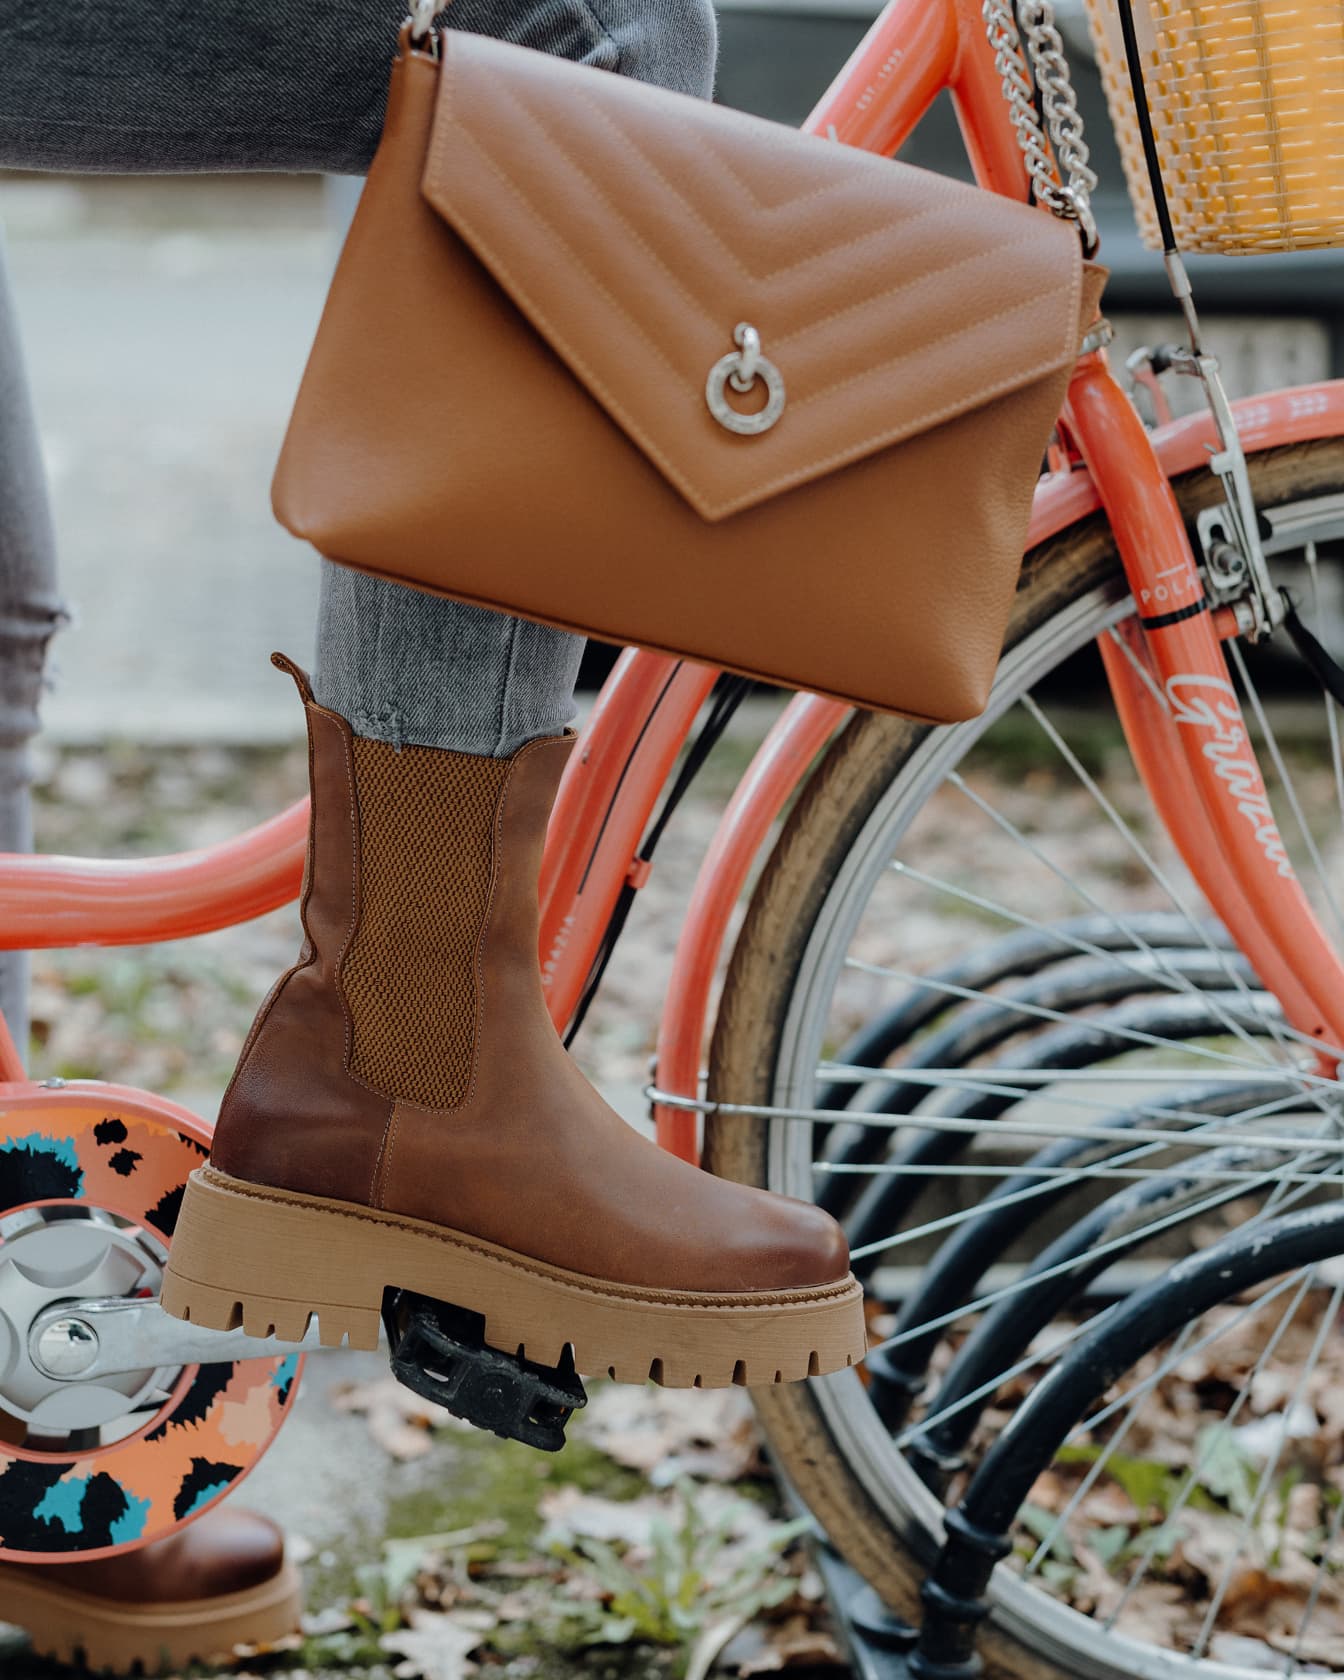 Efektná hnedá kožená kabelka a elegantná čižma na fotografickom modeli na bicykli